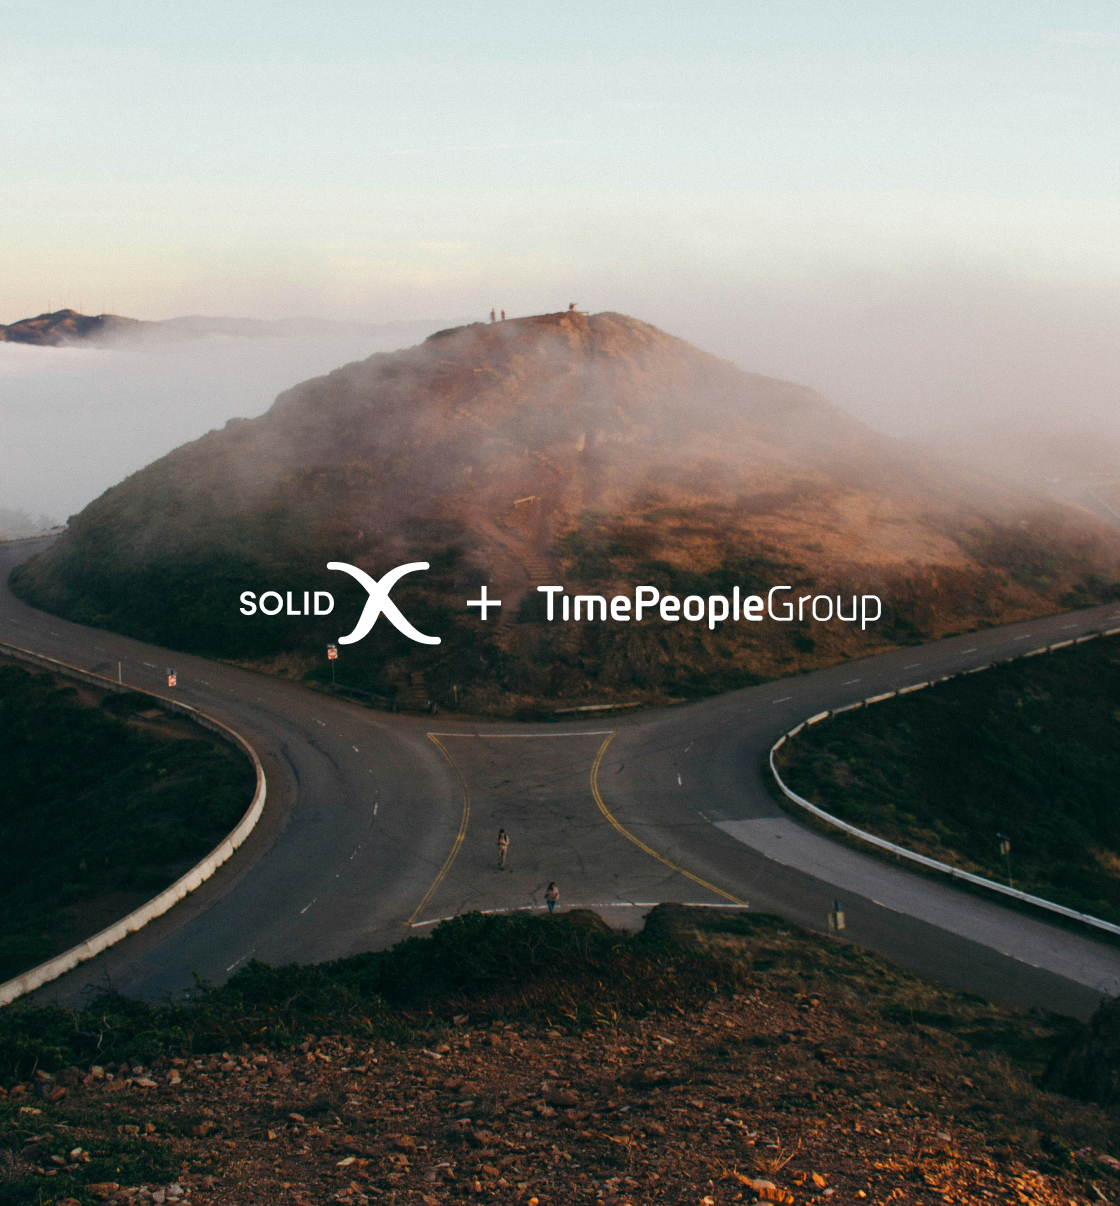 SolidX meddelar att fusionen med Time People Group senareläggs